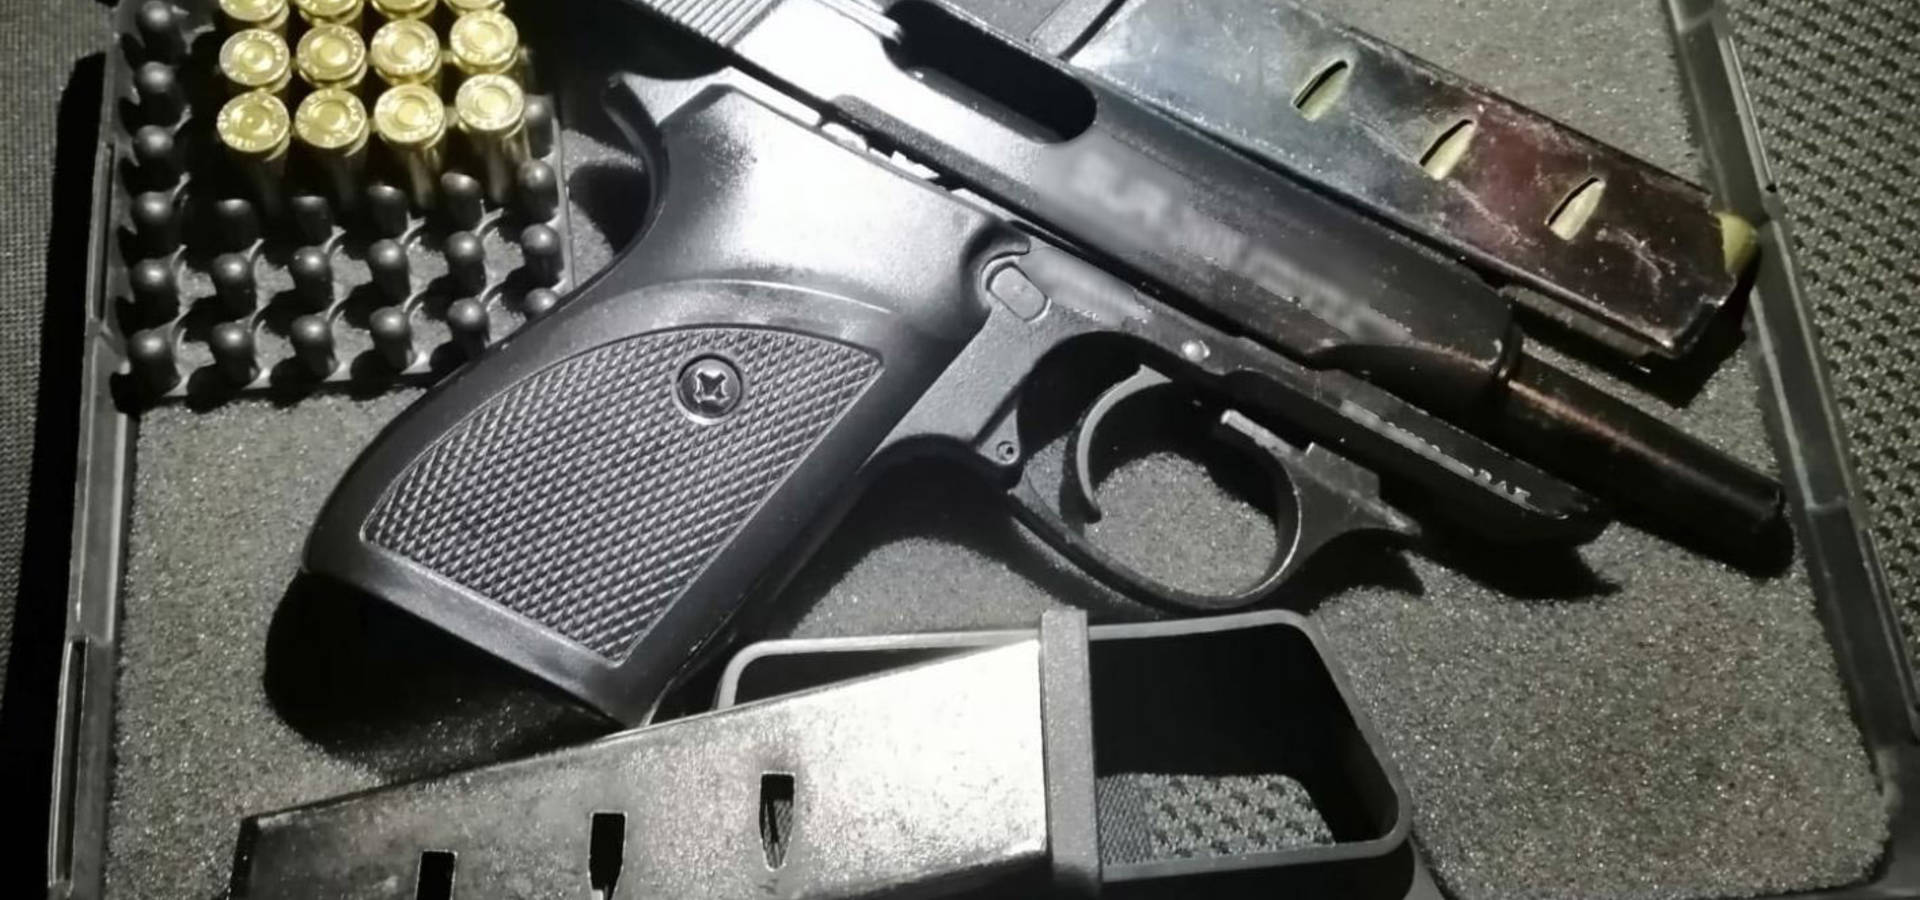 Приклав пістолет до голови відвідувача кафе: у Вінниці затримали зловмисника